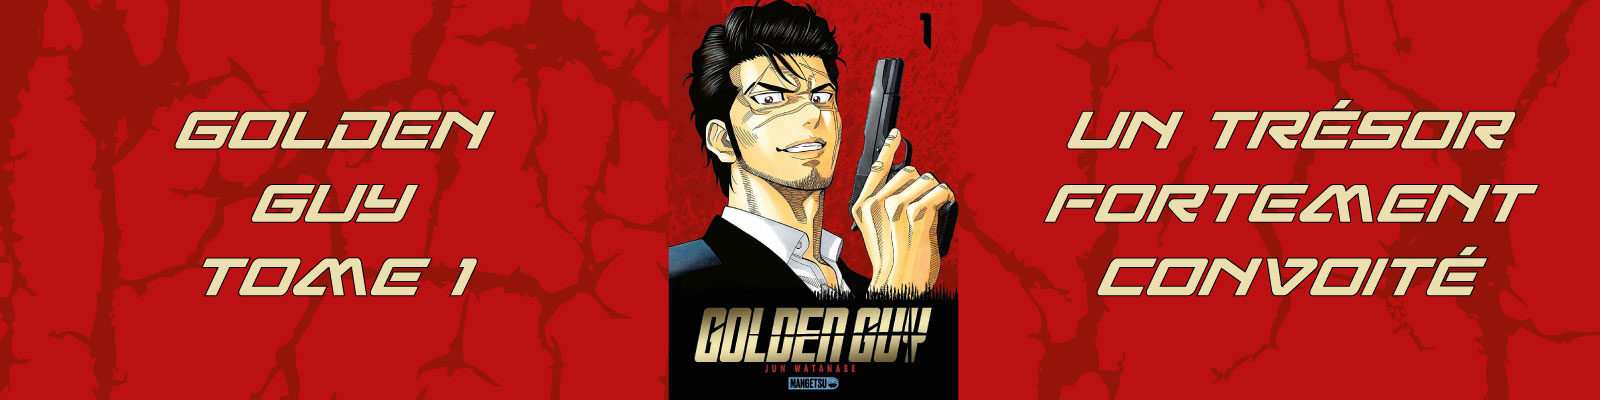 Golden Guy-T1-2